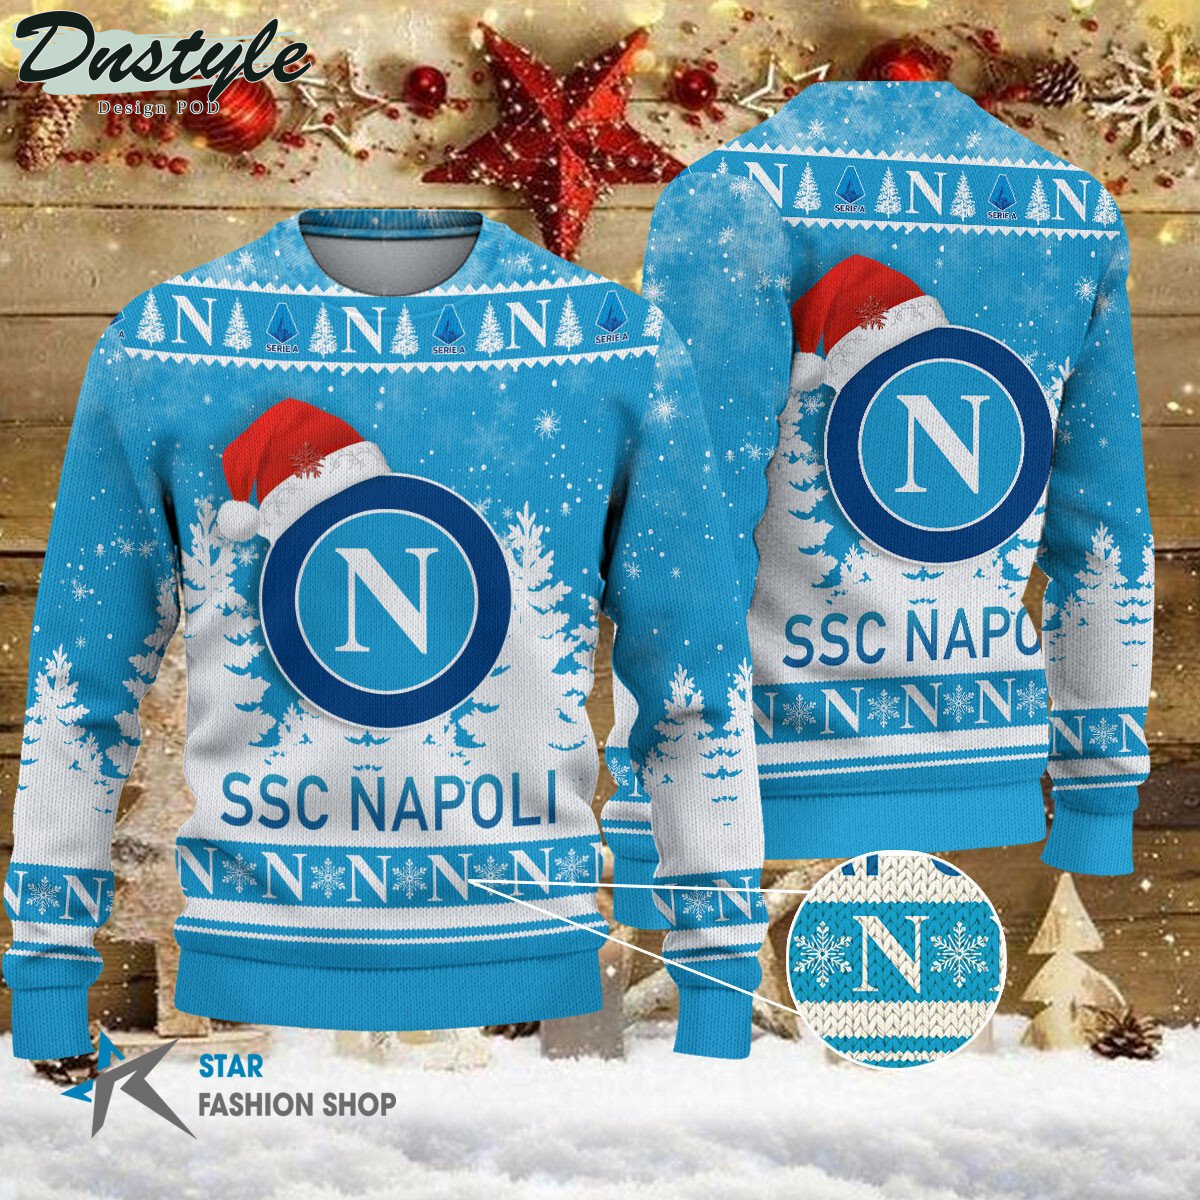 Spezia Calcio brutto maglione natalizio